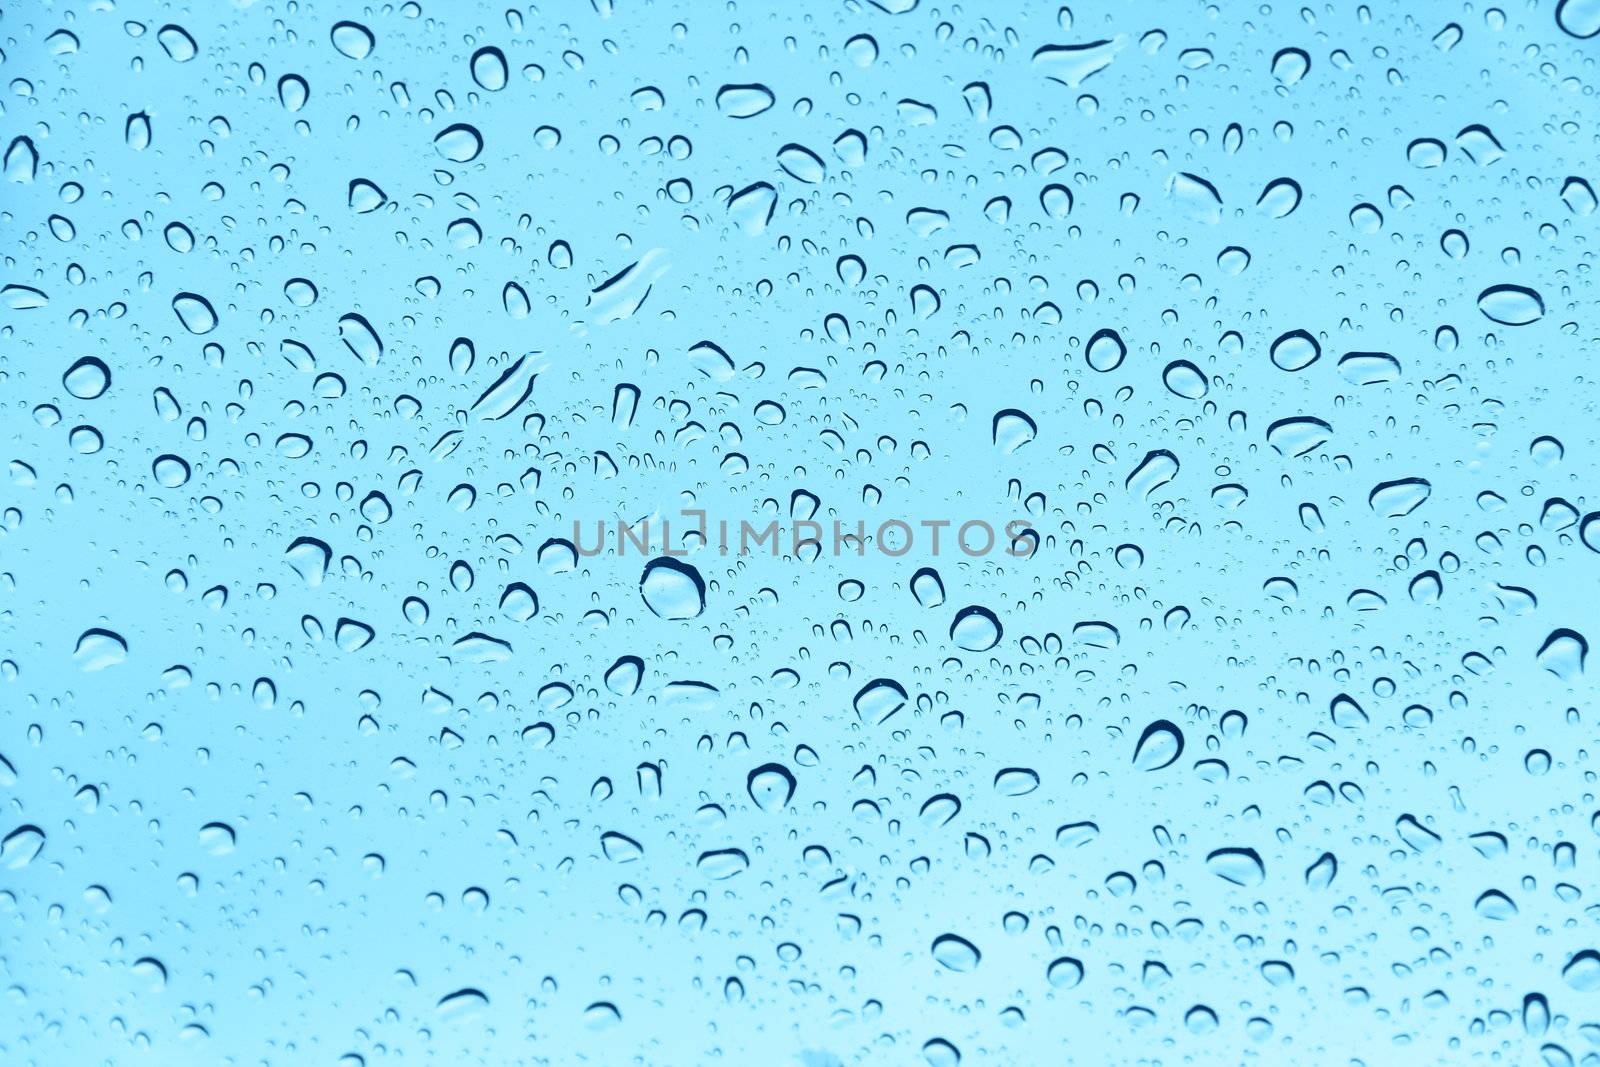 Waterdrops on glass by destillat